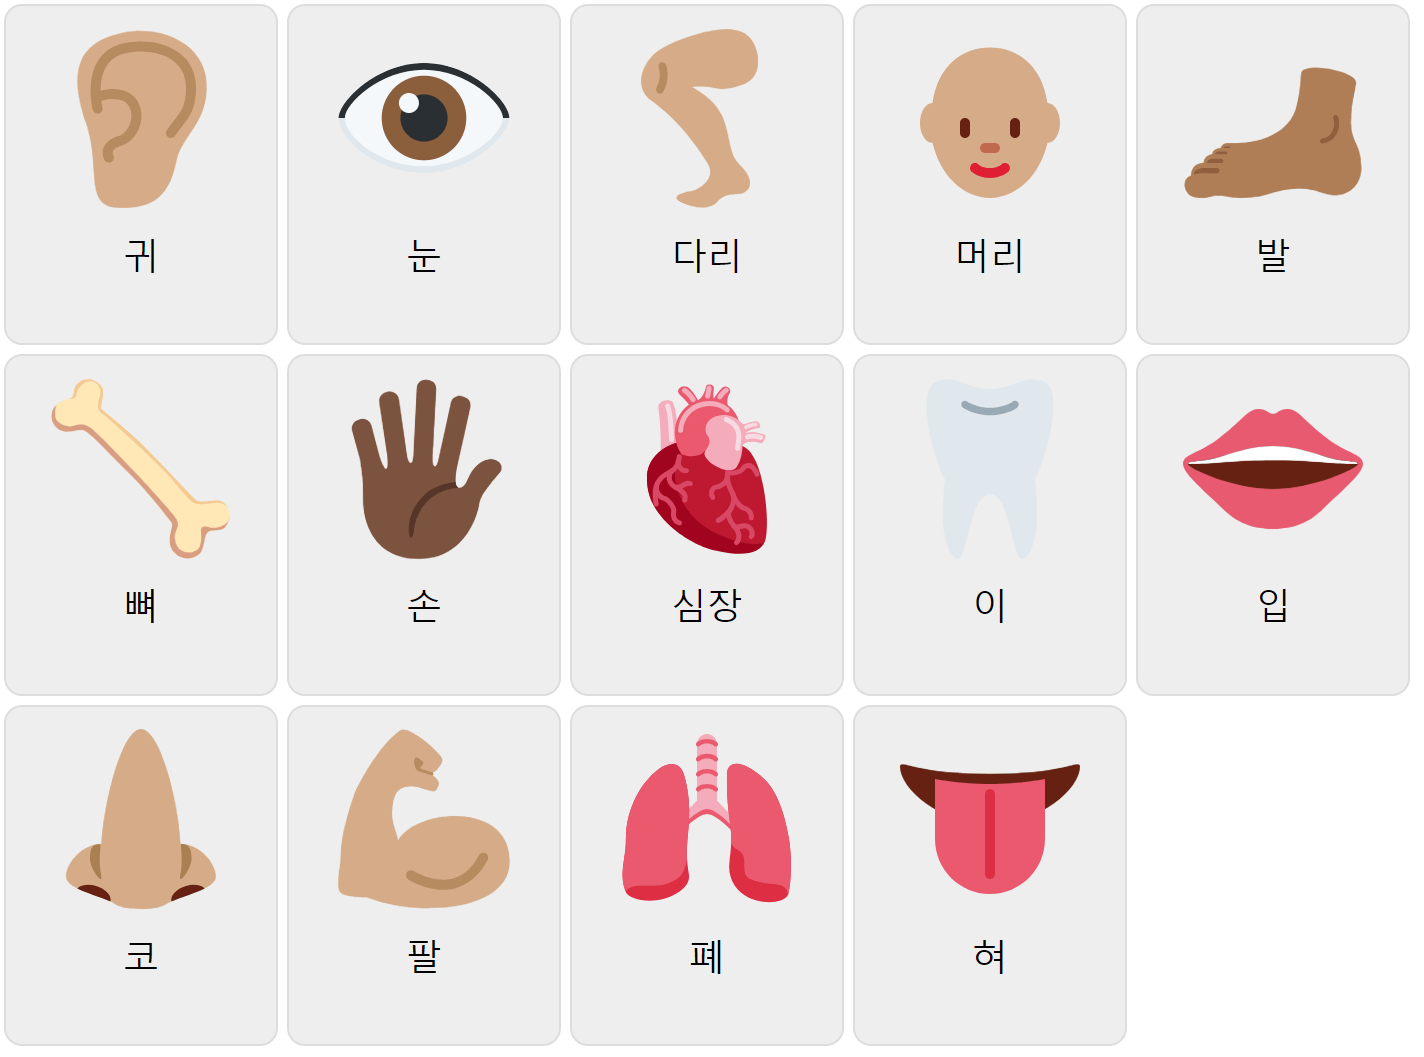 Körperteile auf Koreanisch